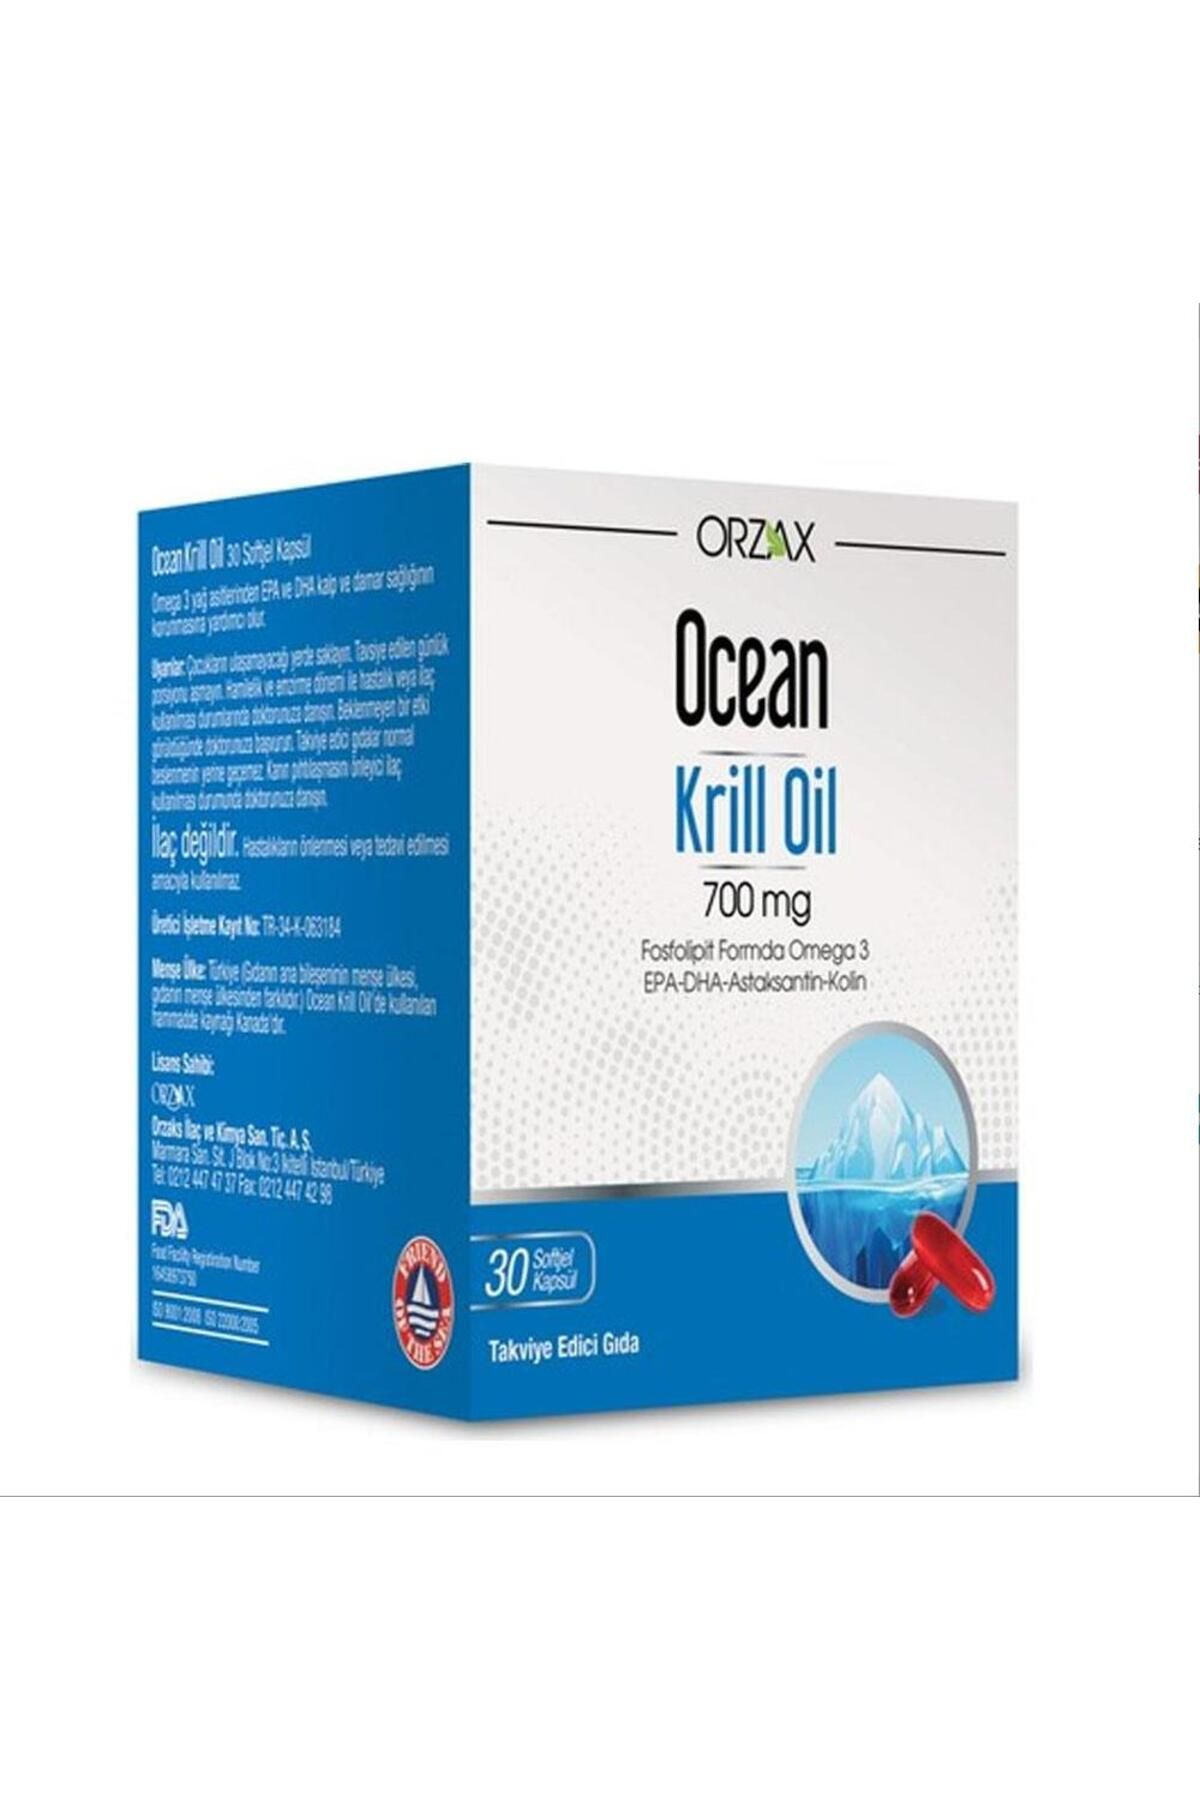 Ocean Orzax Orzax Ocean Krill Oil Omega-3 Krill Yağı İçeren Takviye Edici Gıda 30 Kapsül